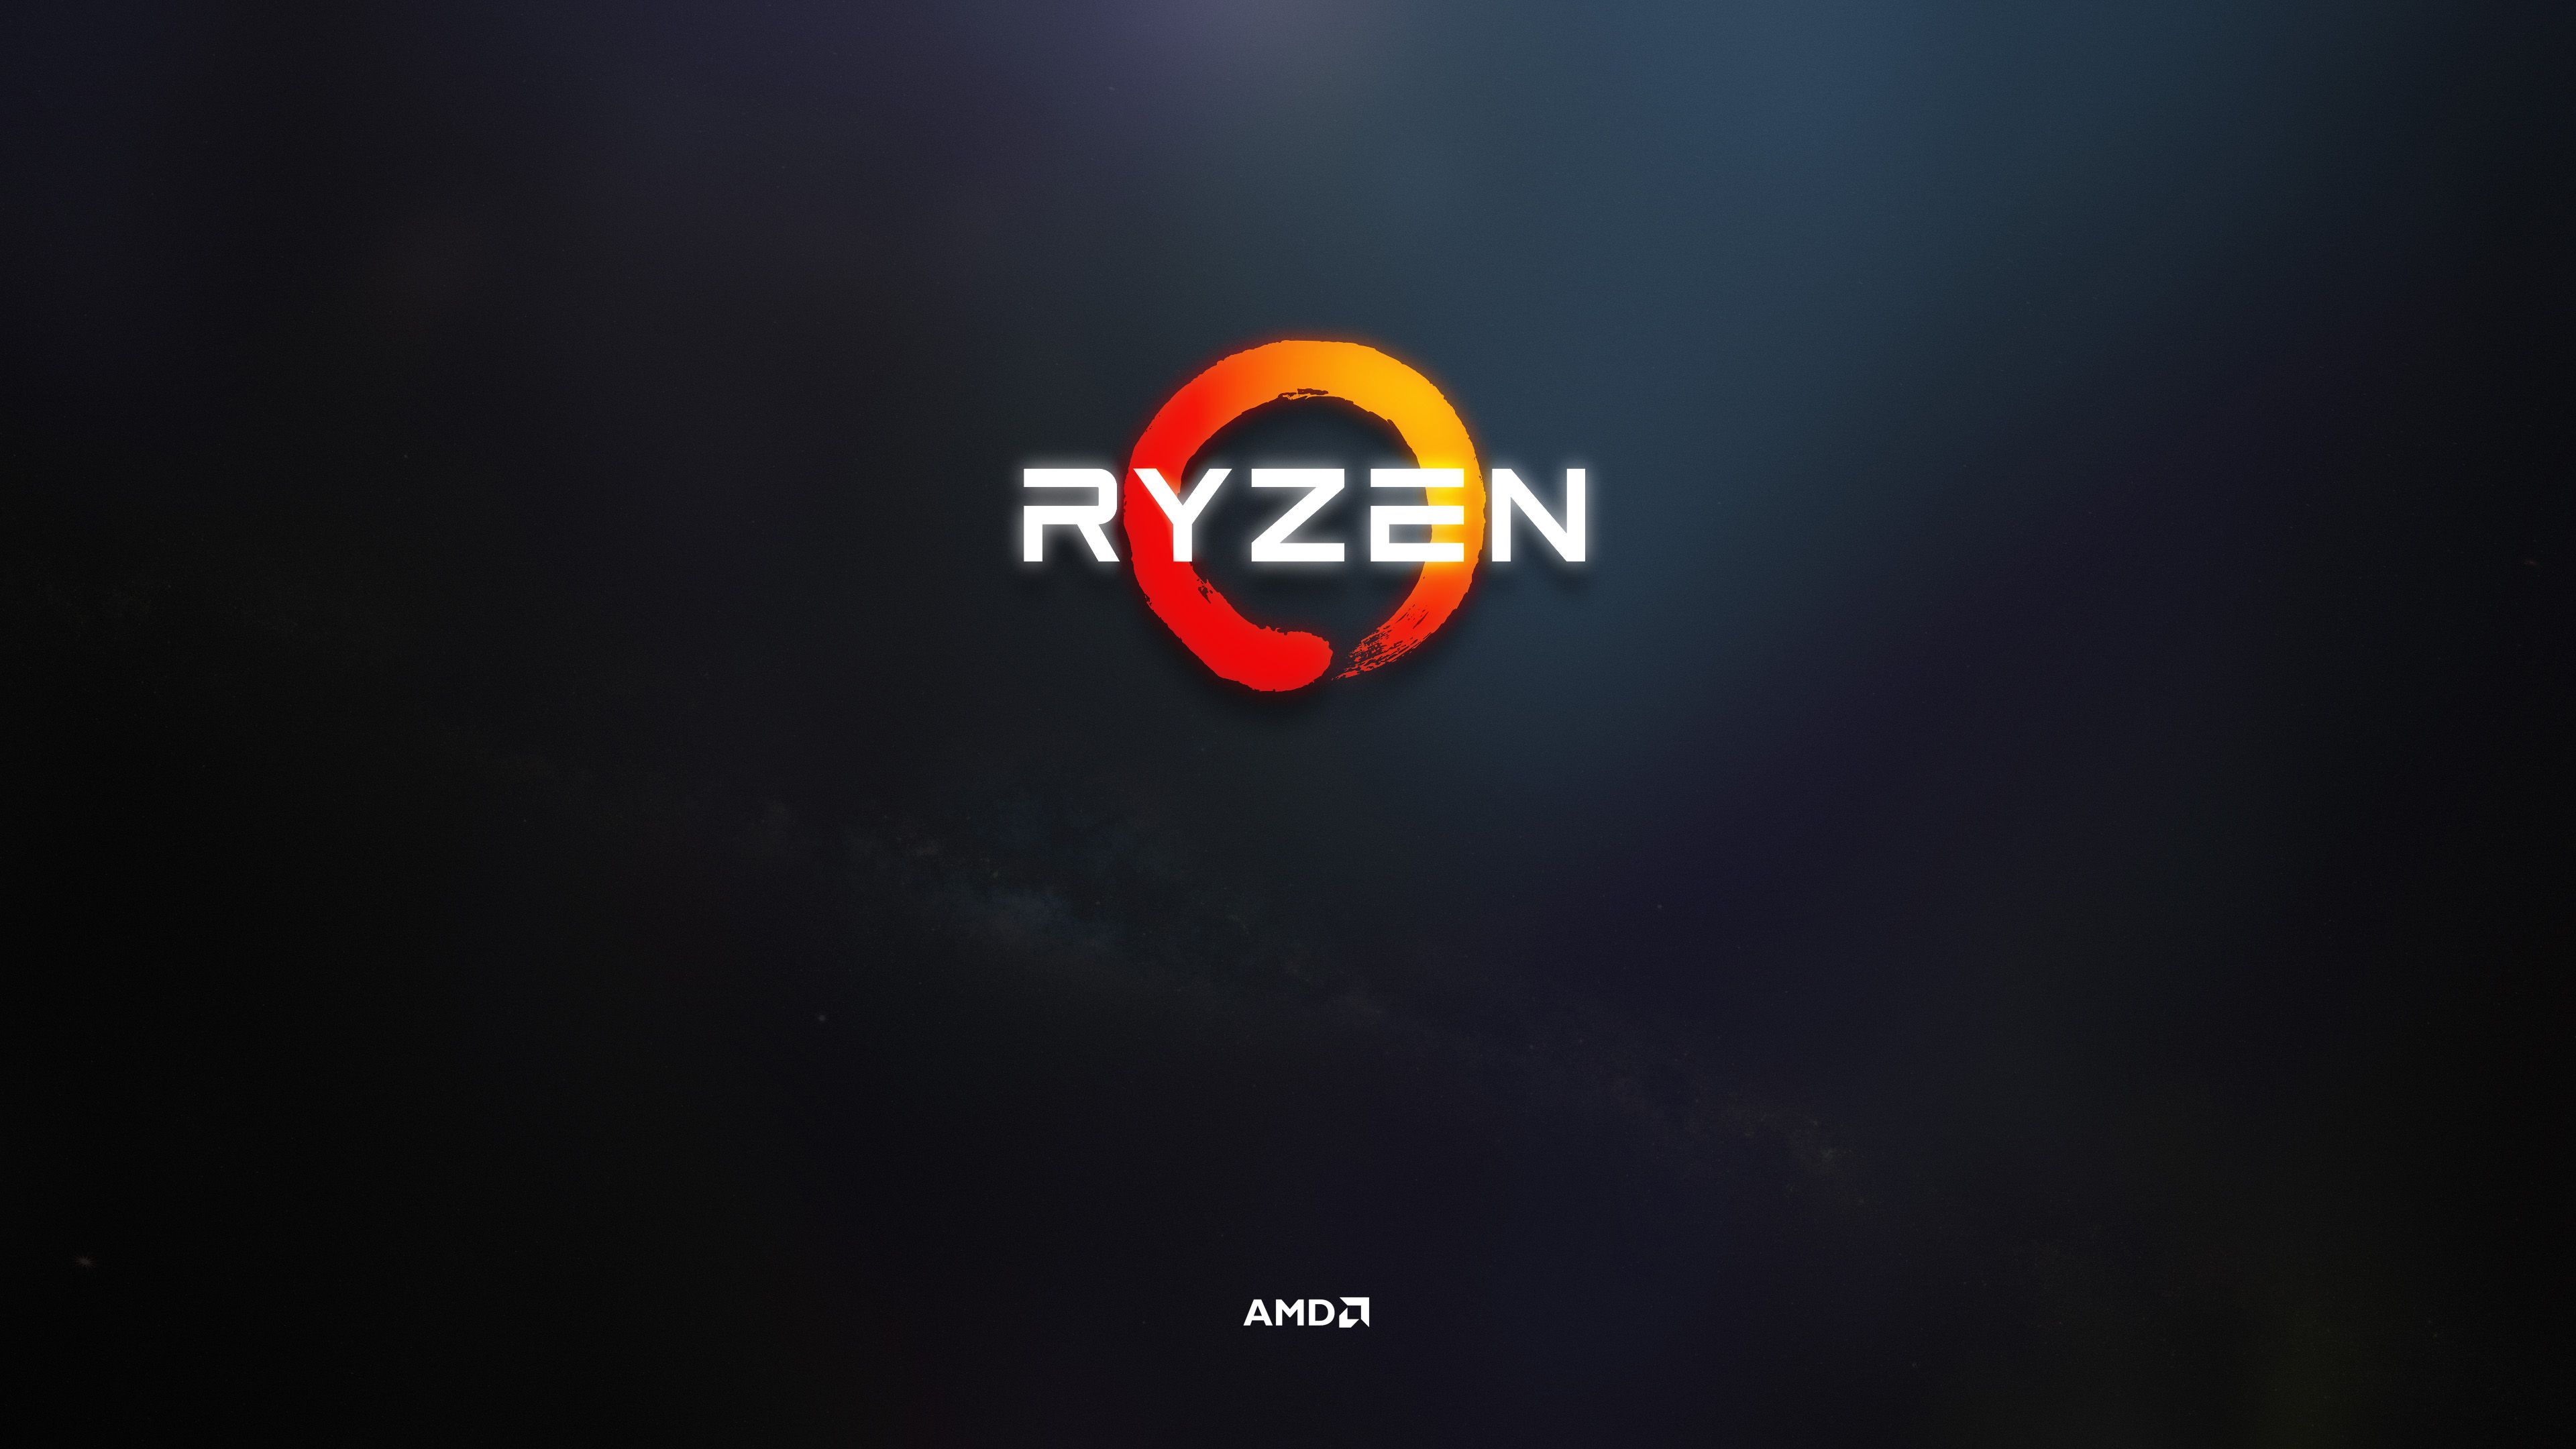 AMD Ryzen Wallpaper Free AMD Ryzen Background